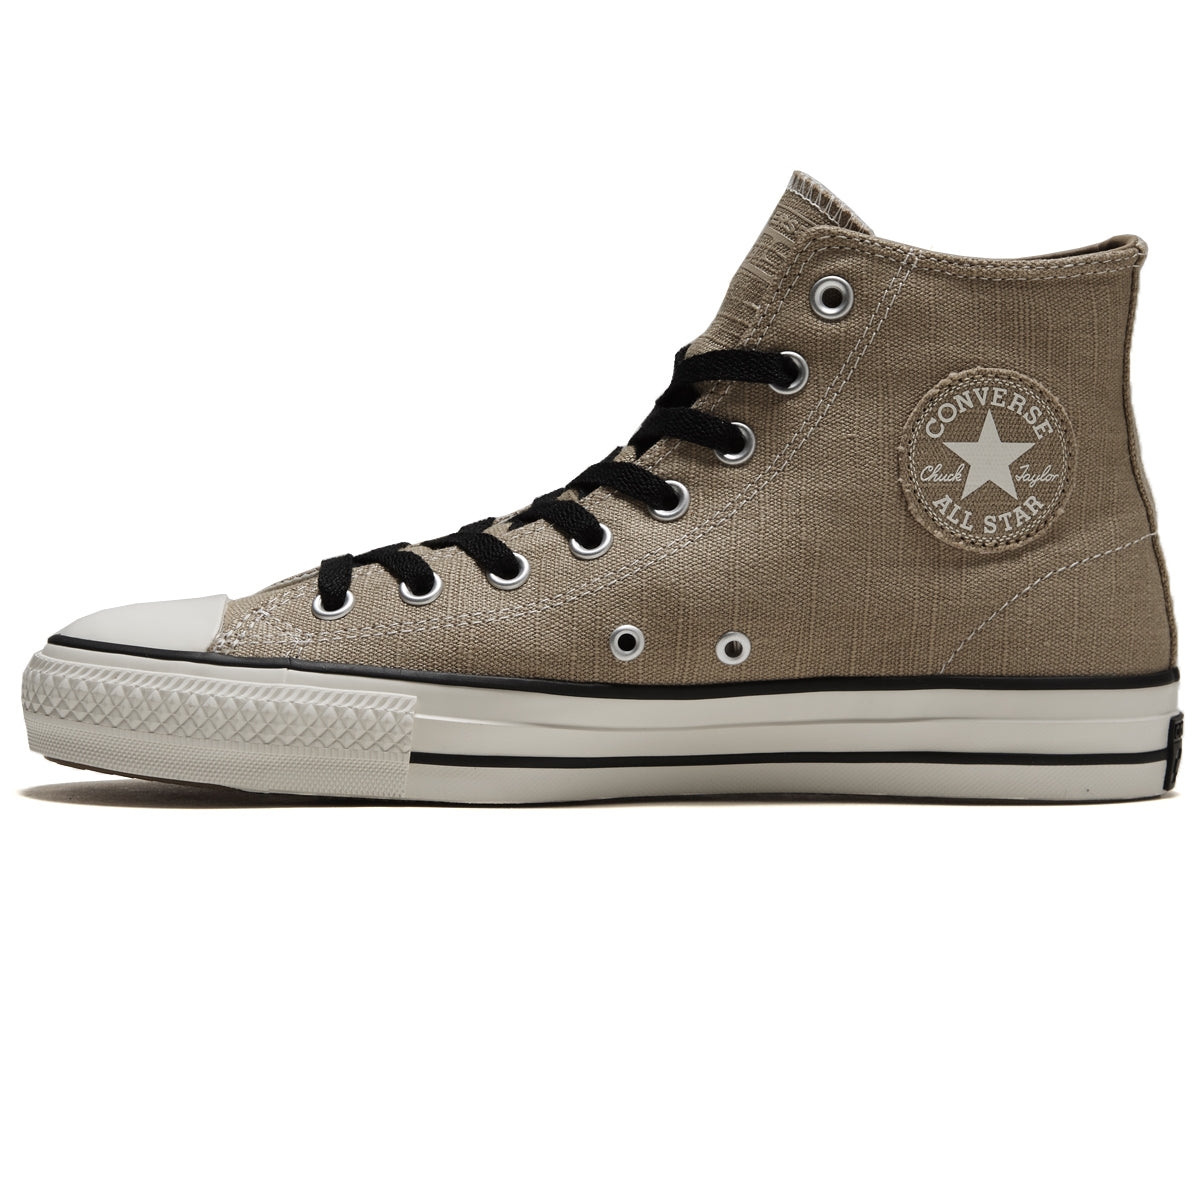 Converse Chuck Taylor All Star Pro Hi Shoes - Nomad Khaki/Black/Egret – CCS